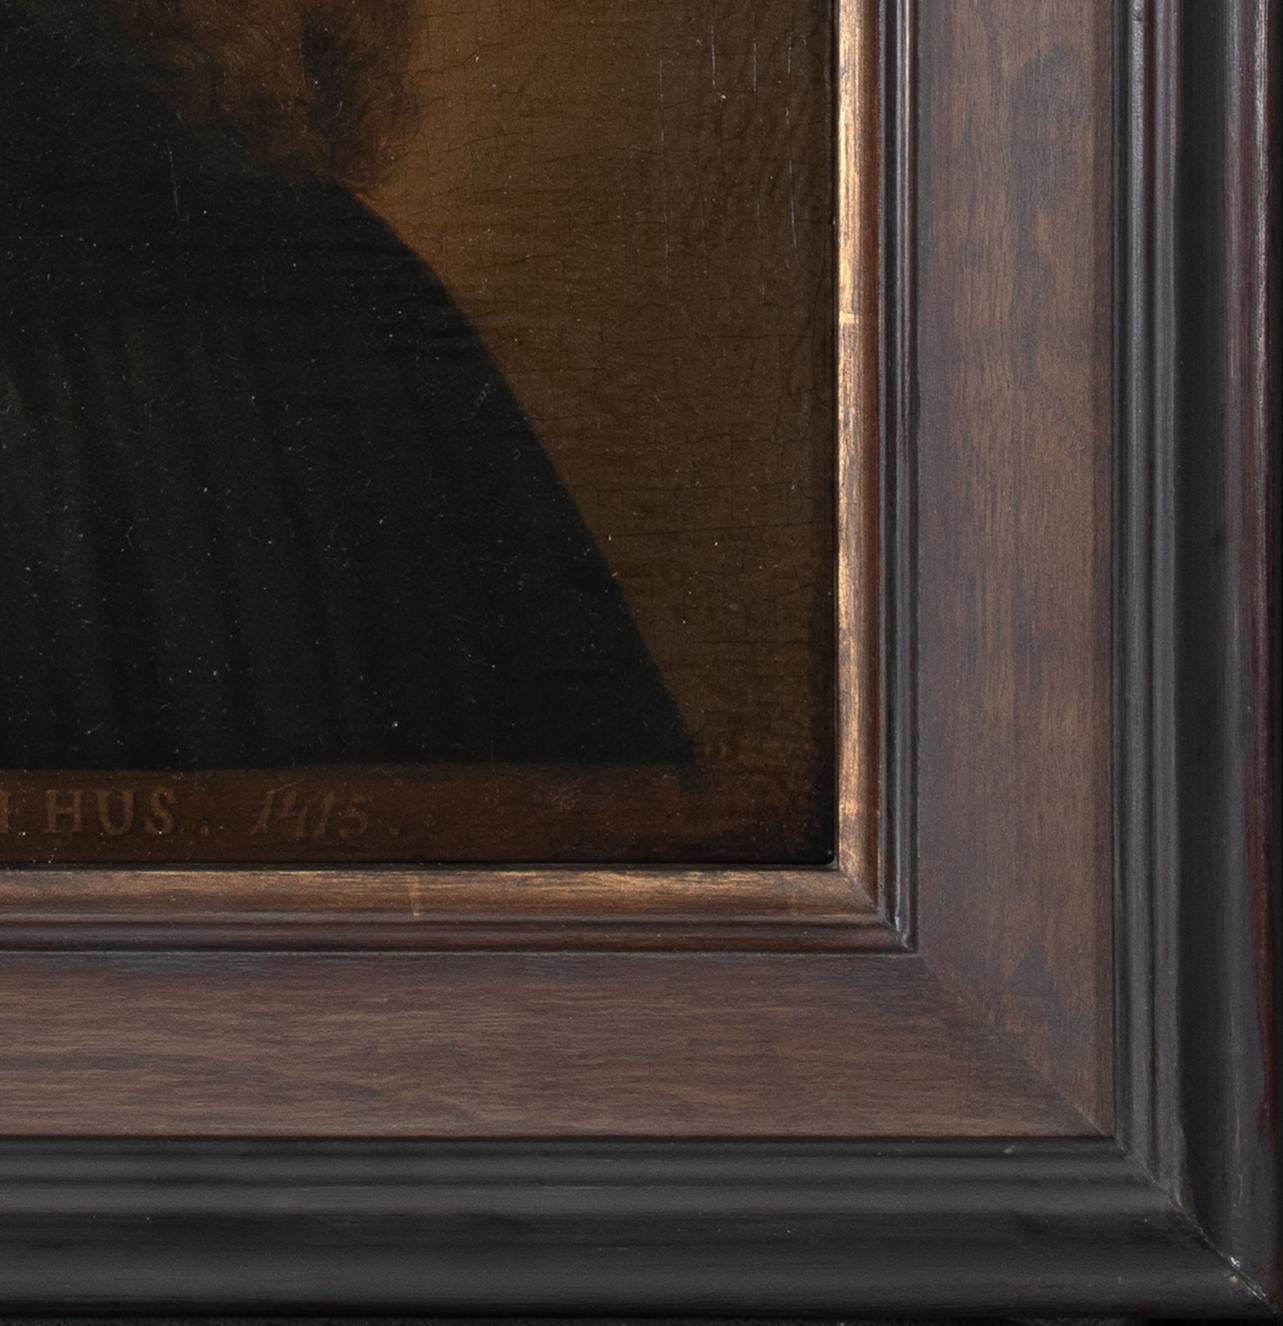 Porträt des tschechoslowakischen Theologen Jan Hus (1370-1415), 17. Jahrhundert

Europäische Schule 

Europäisches Schulporträt des tschechischen Theologen Jan Hus aus dem 17. Jahrhundert, Öl auf Tafel. Ausgezeichnete Qualität und Zustand seltene